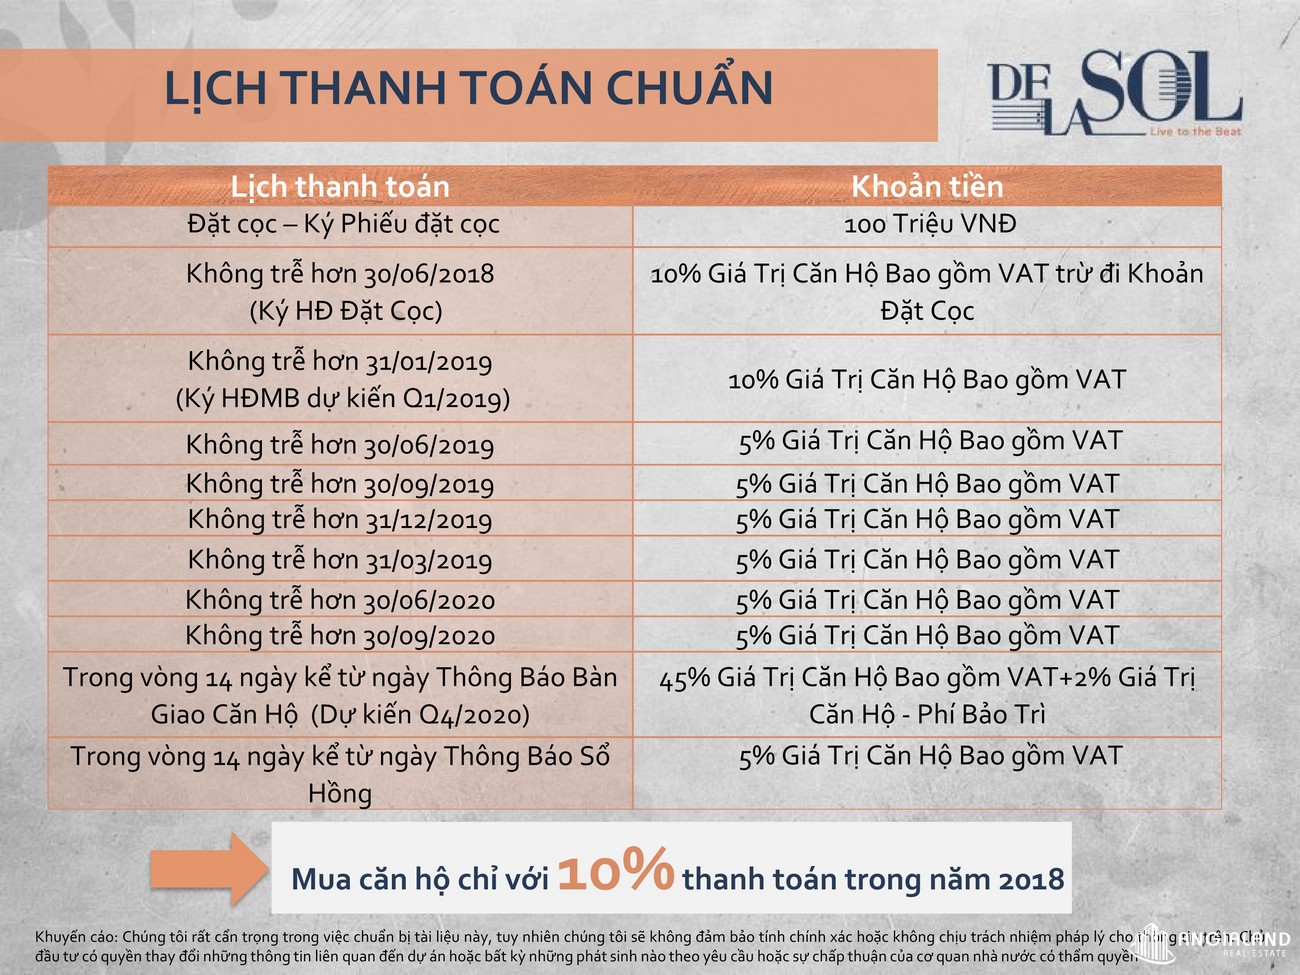 Phương thức thanh toán dự án căn hộ chung cư De La Sol Quan 4 Đường Tôn Thất Thuyết chủ đầu tư Capital Việt Nam